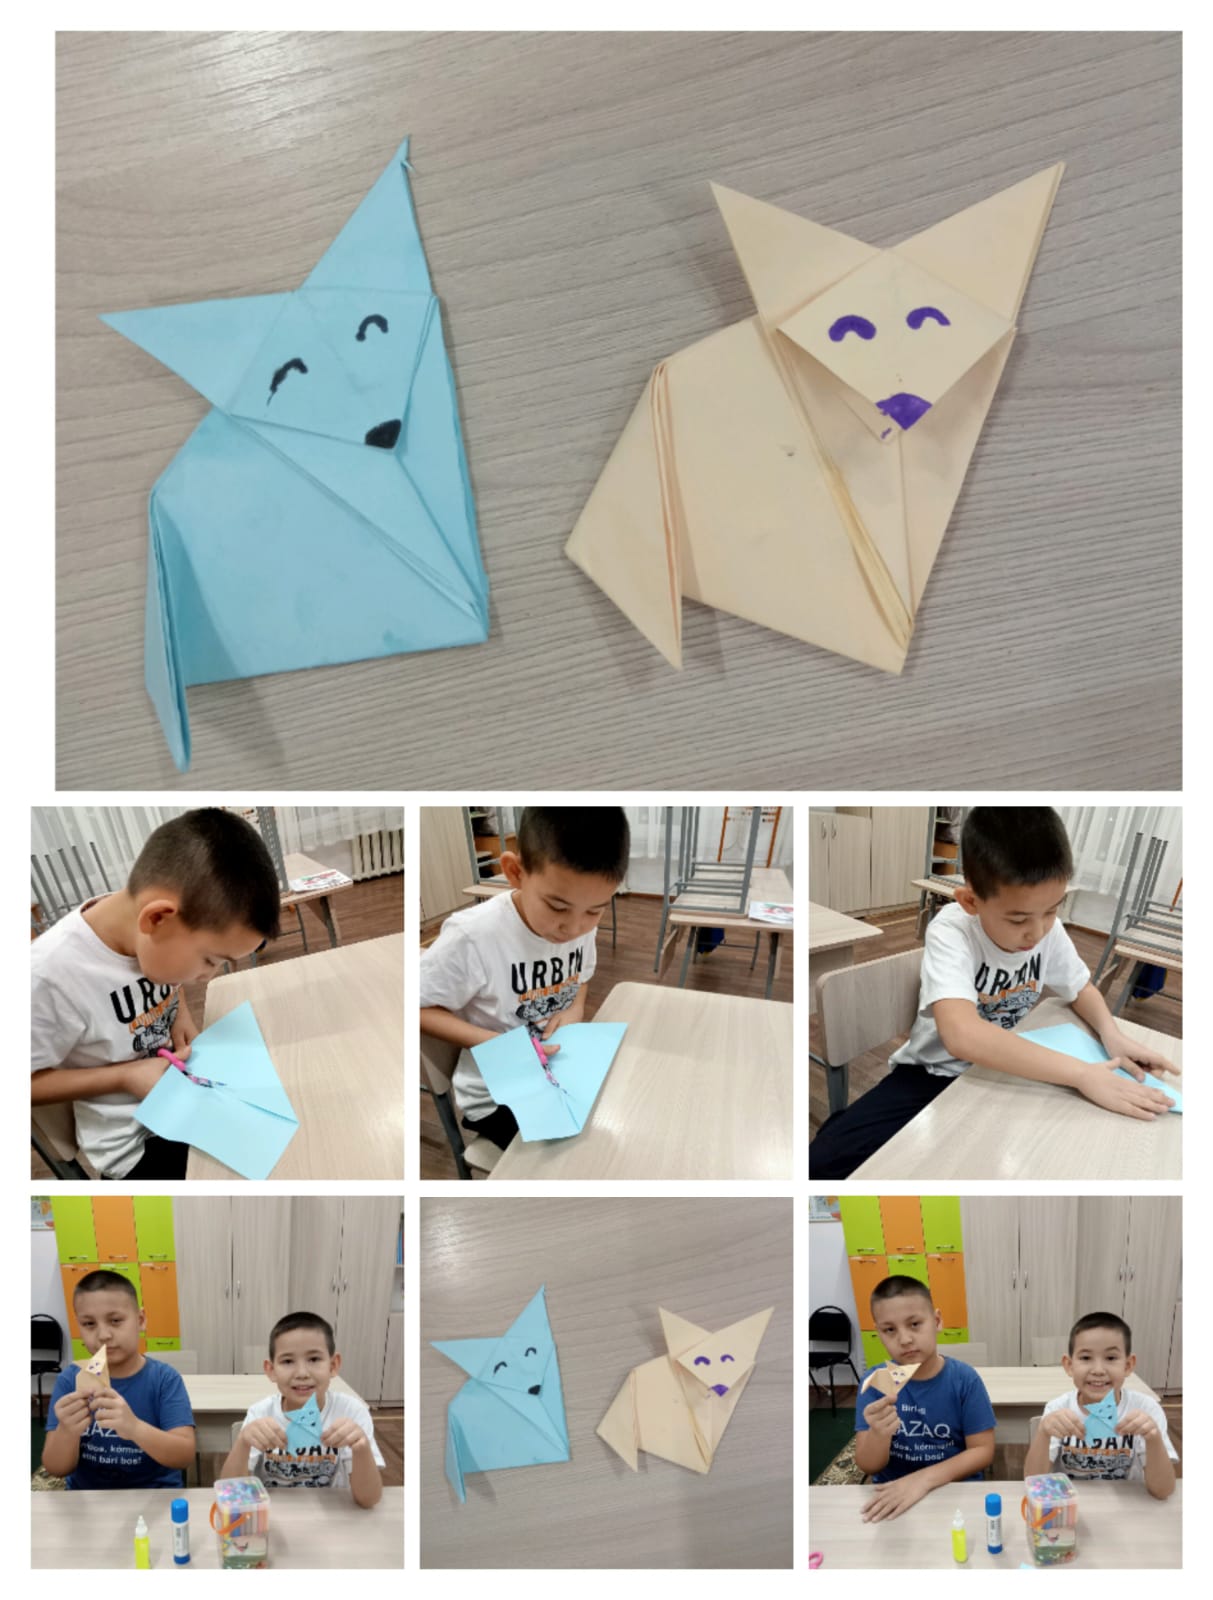 Методы оригами